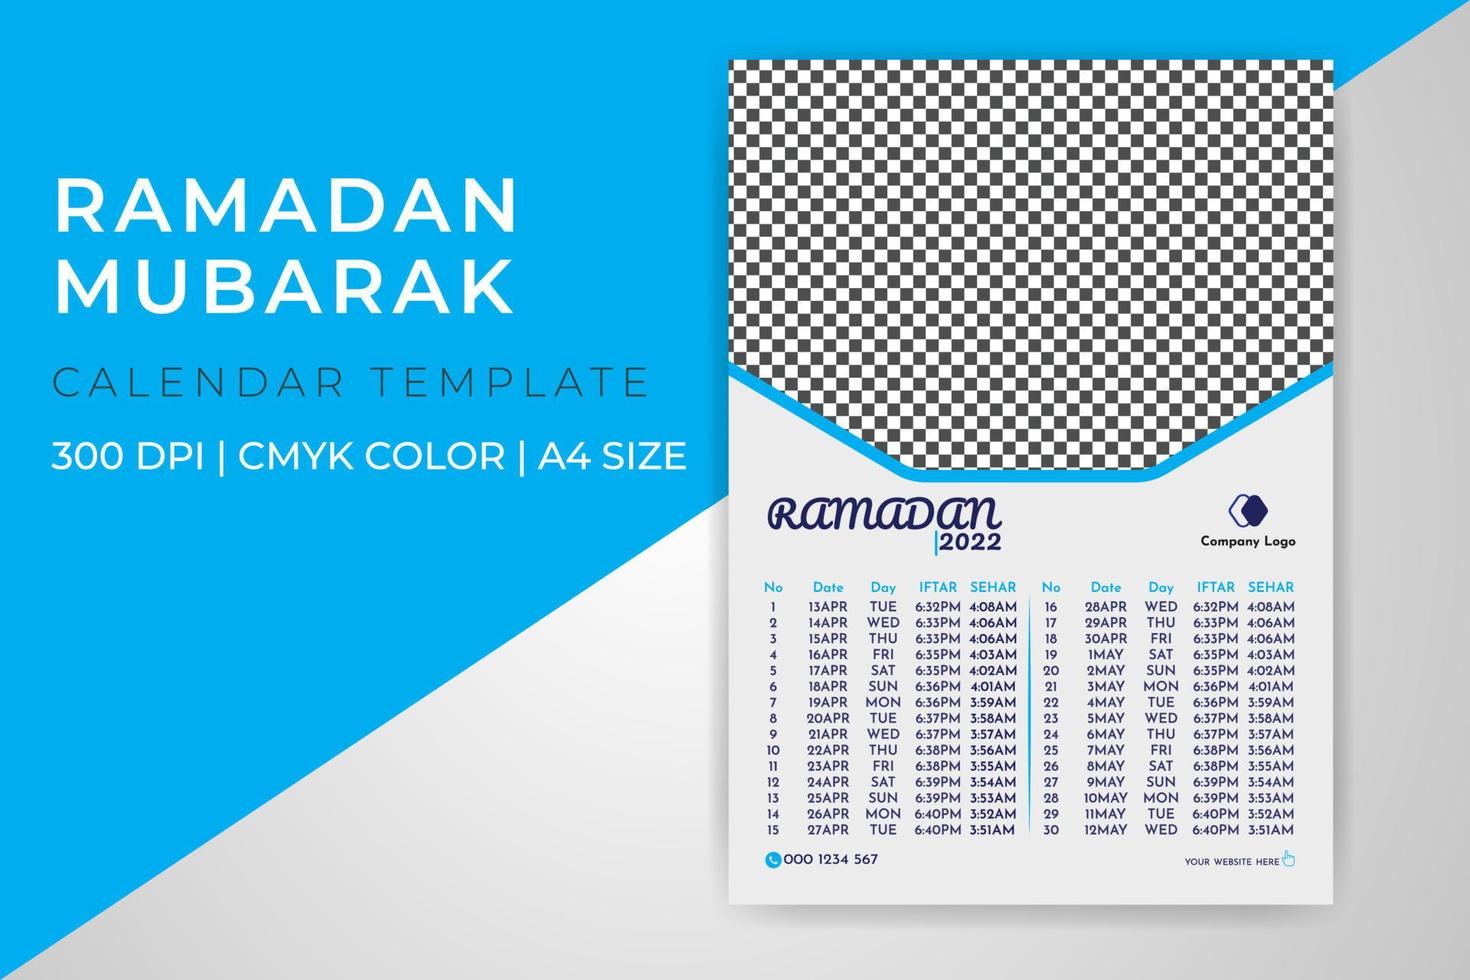 Ramadan Mubarak Kalender 2022 druckbare Vorlage Design A4 Größe Vektor kostenloser Download